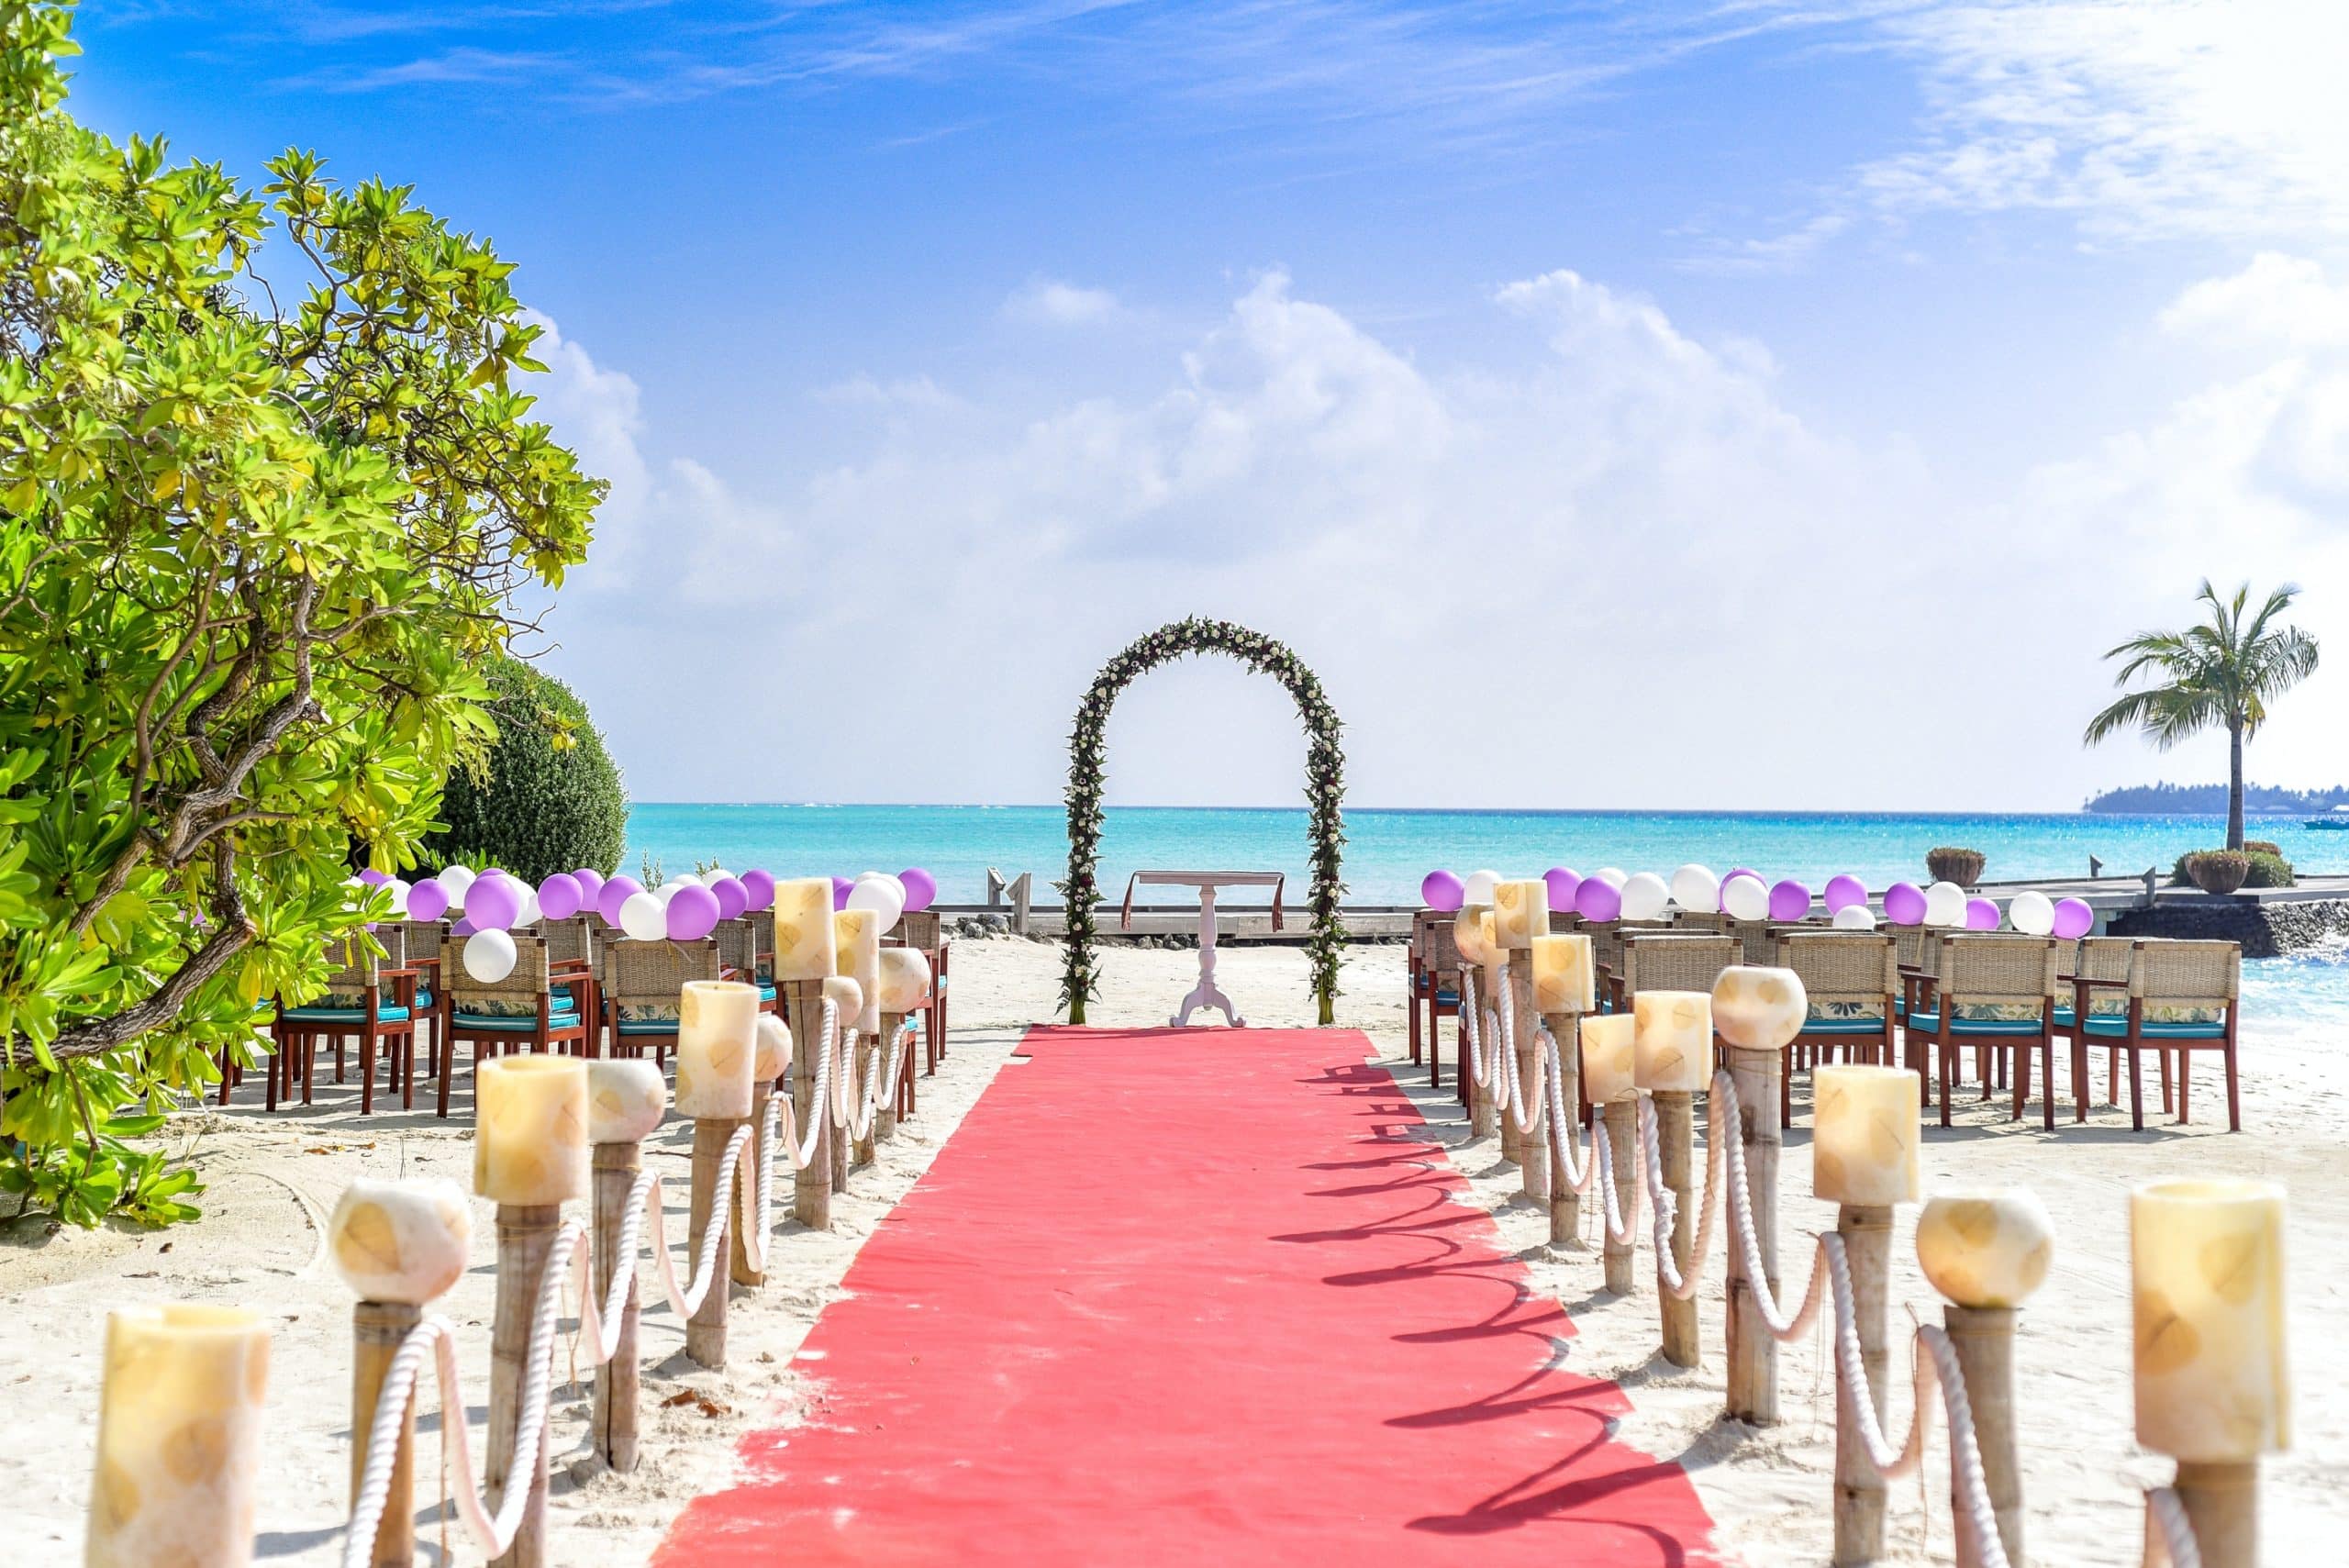 Destination wedding aisle on the beach